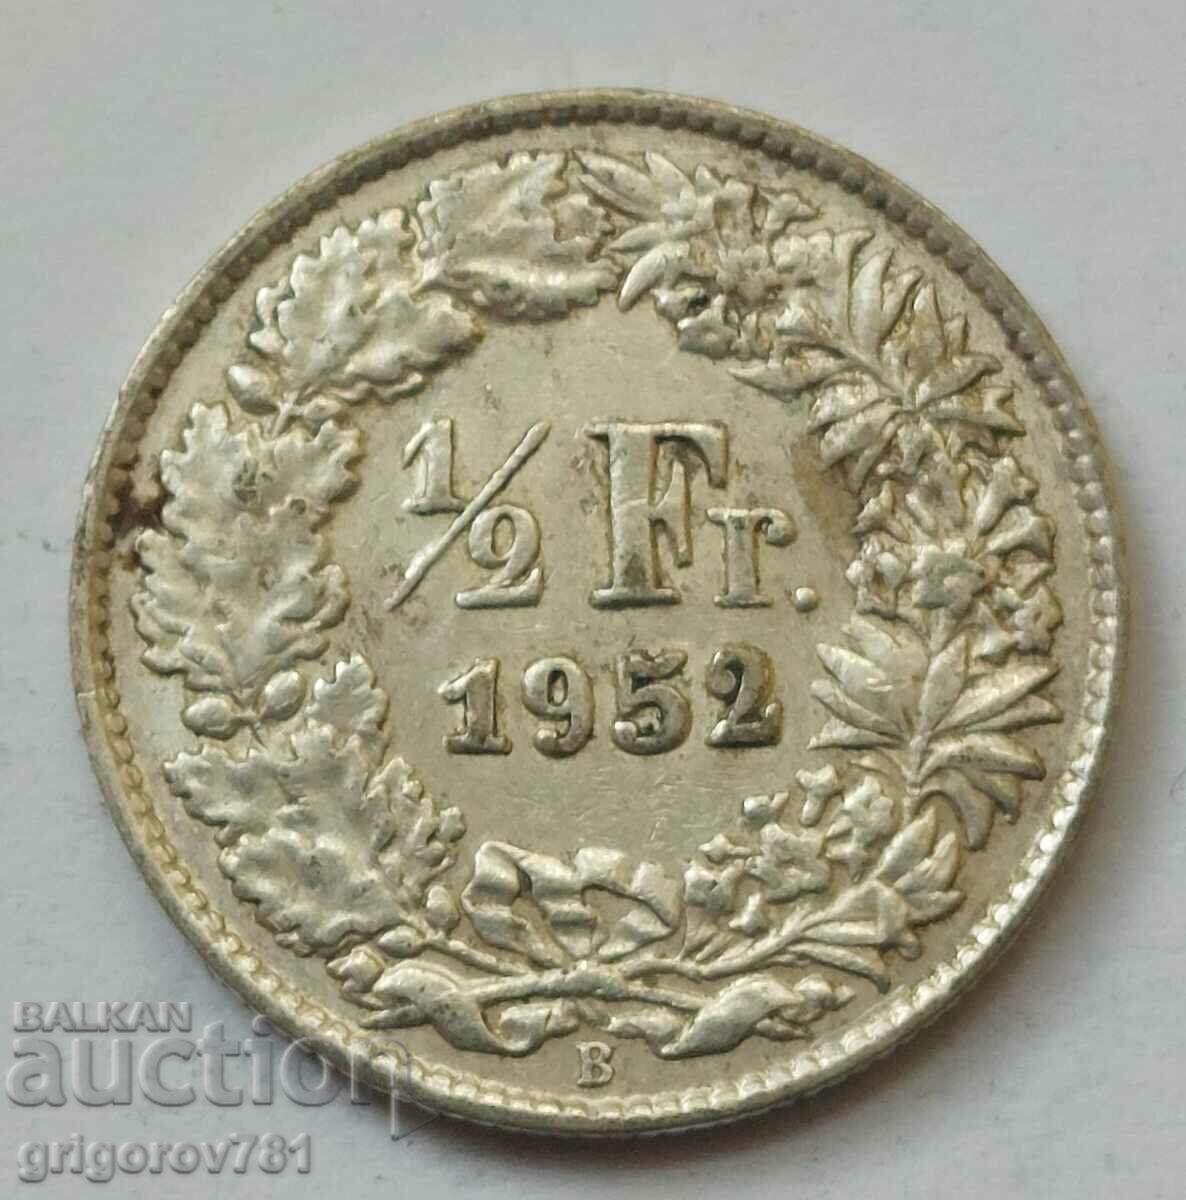 Ασημένιο φράγκο 1/2 Ελβετία 1952 Β - Ασημένιο νόμισμα #121